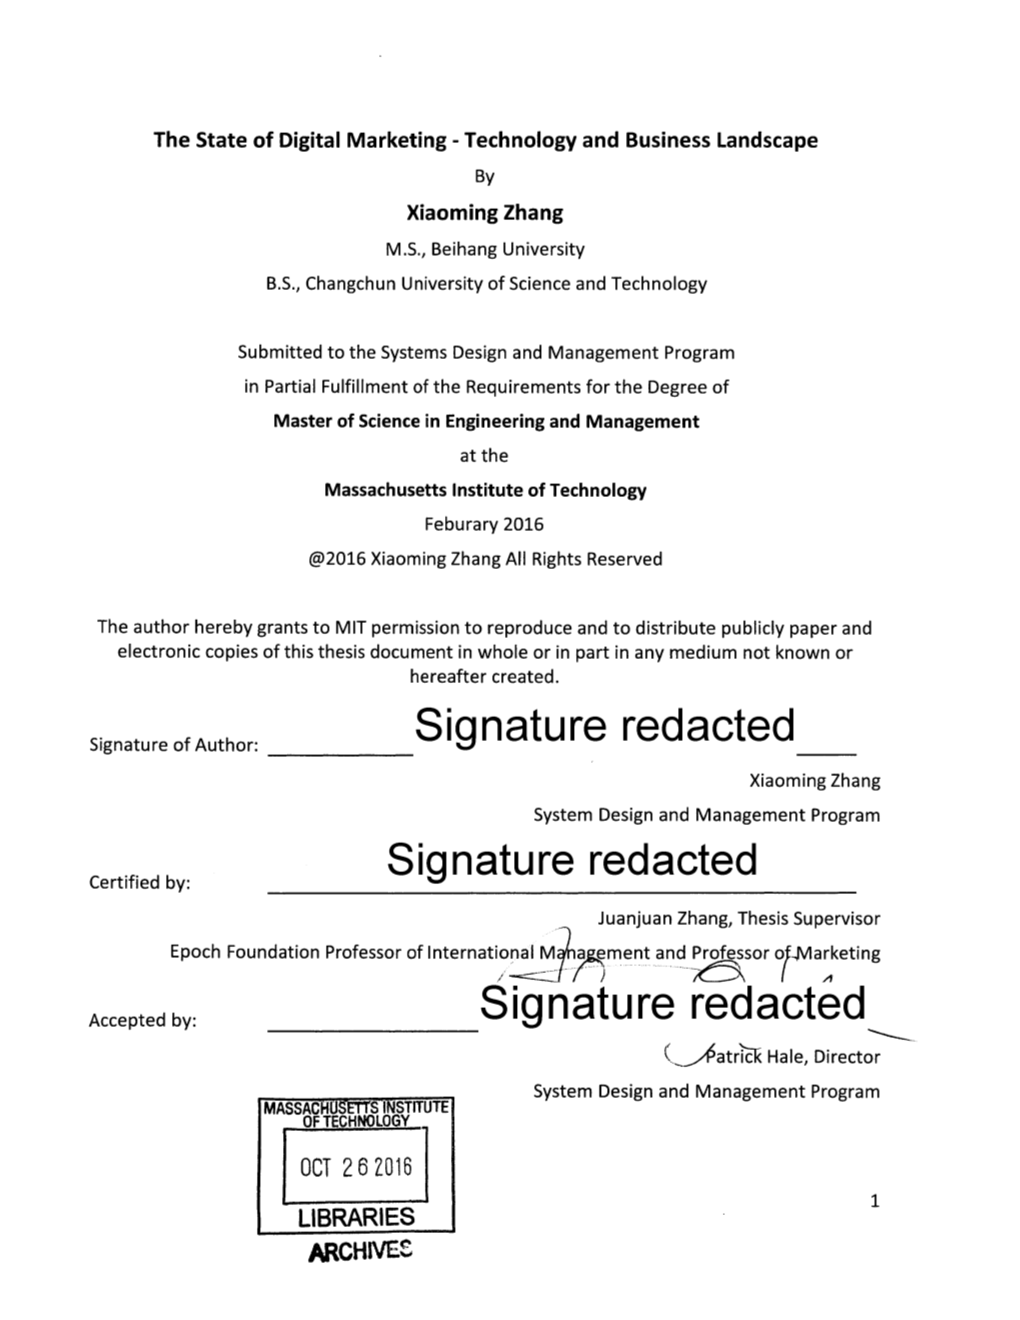 ___Signature Redacted__ Signature Redacted